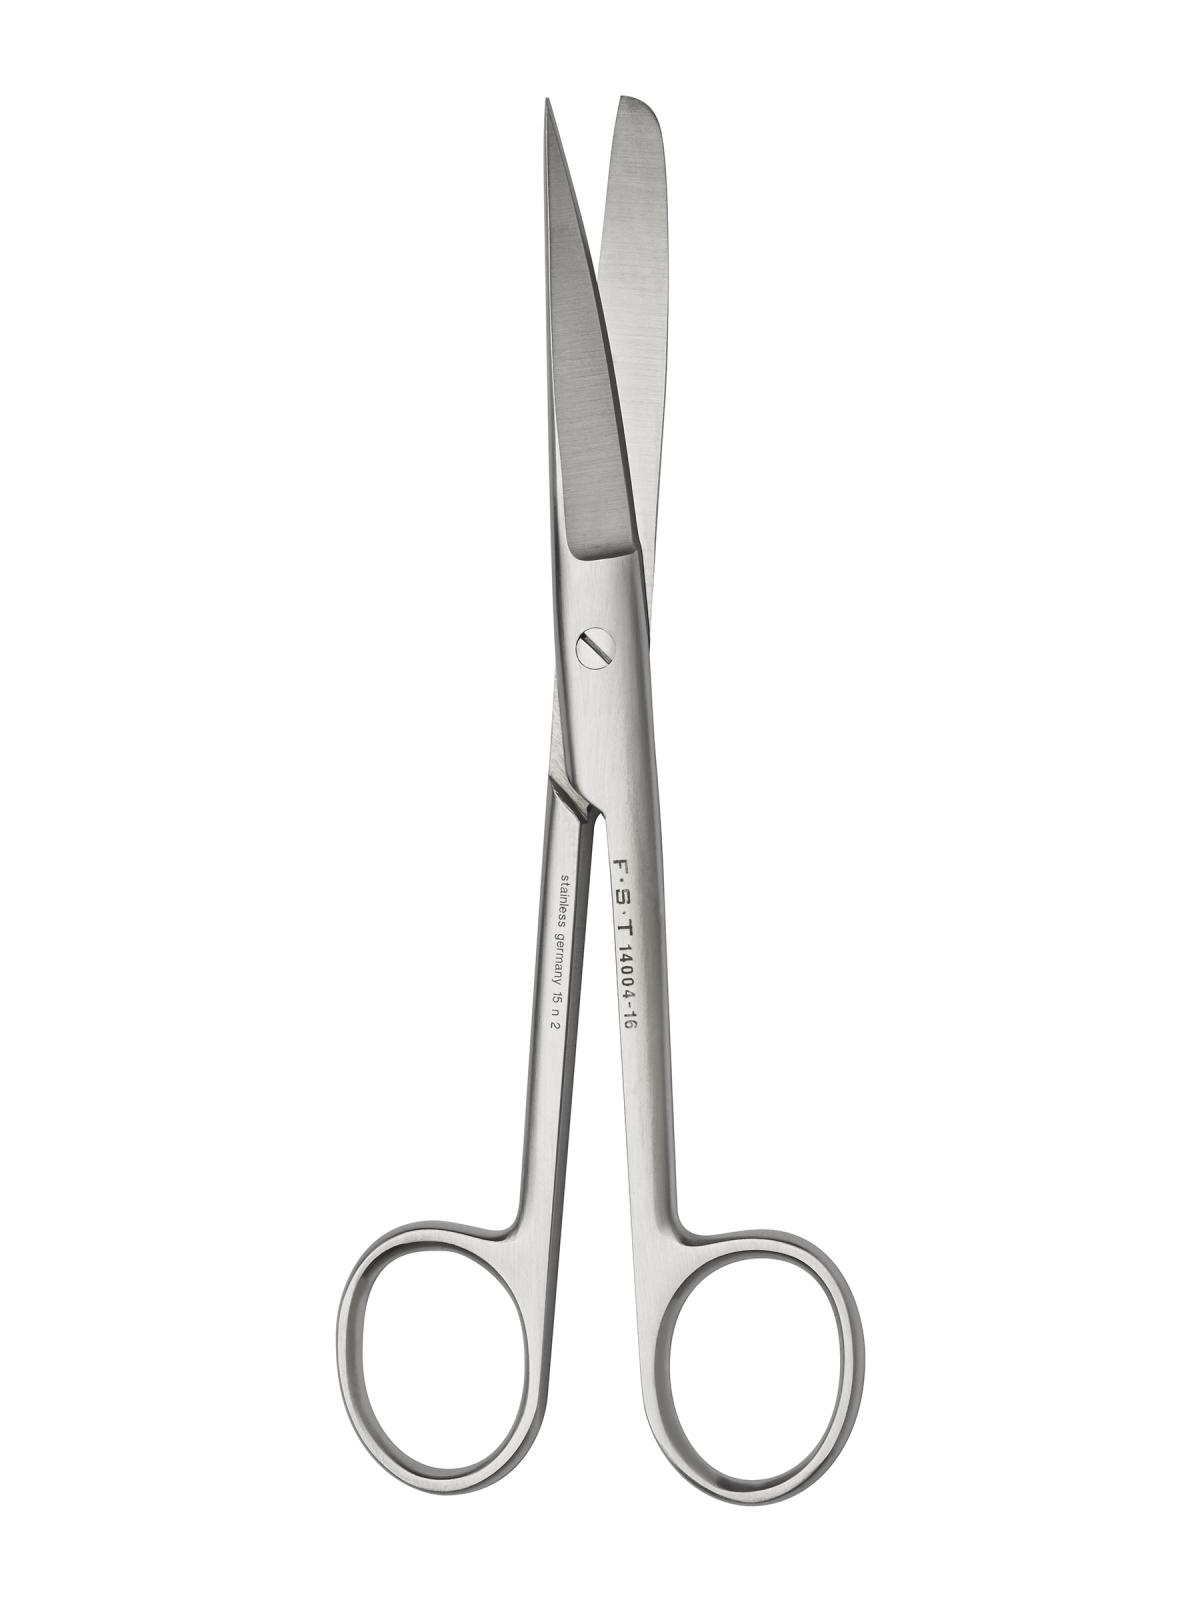 Surgical Scissors, Sharp/Blunt Scissors